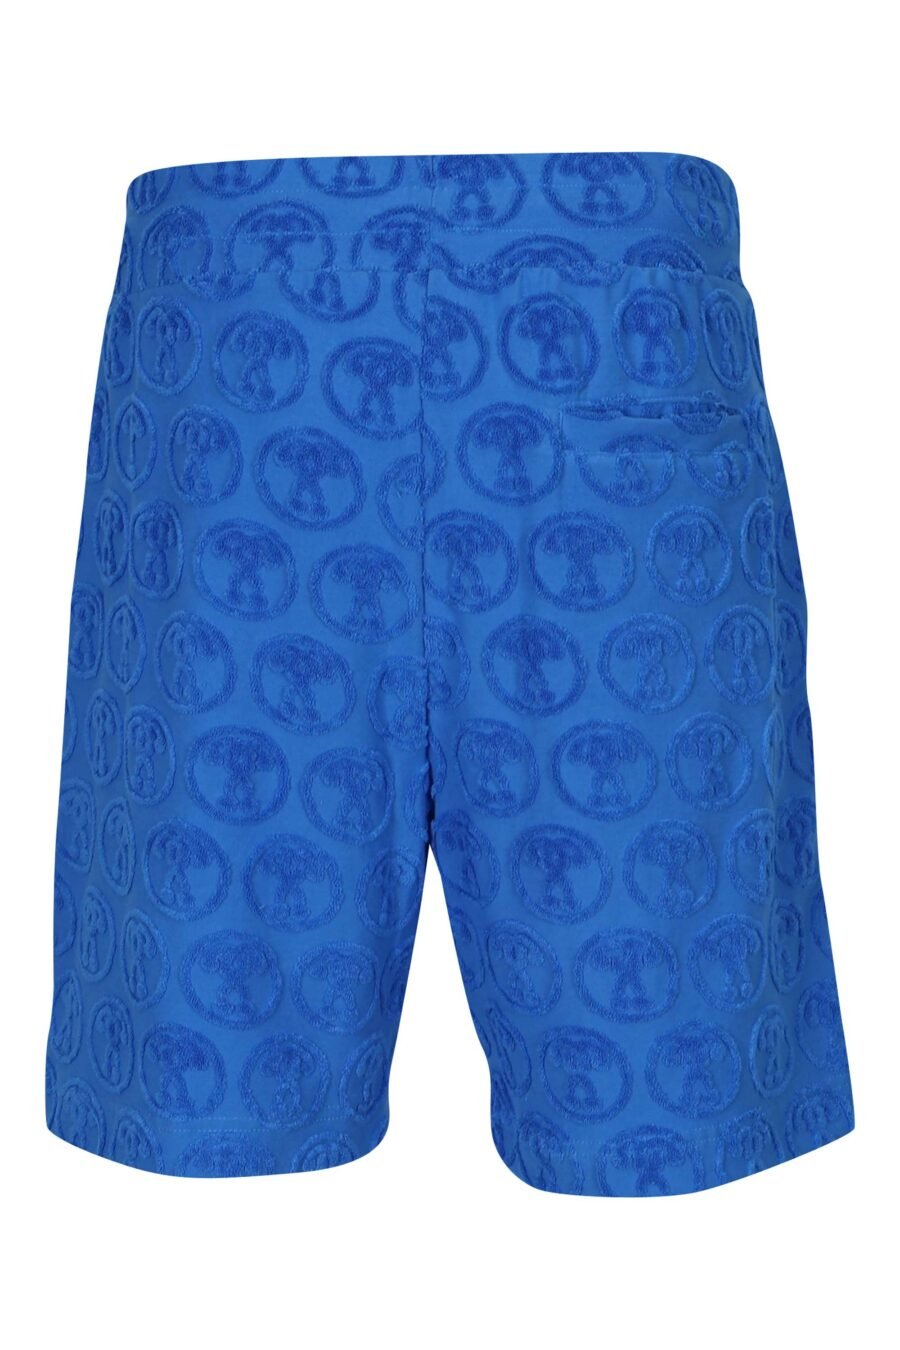 Pantalón corto azul "all over logo" doble pregunta - 667113684086 1